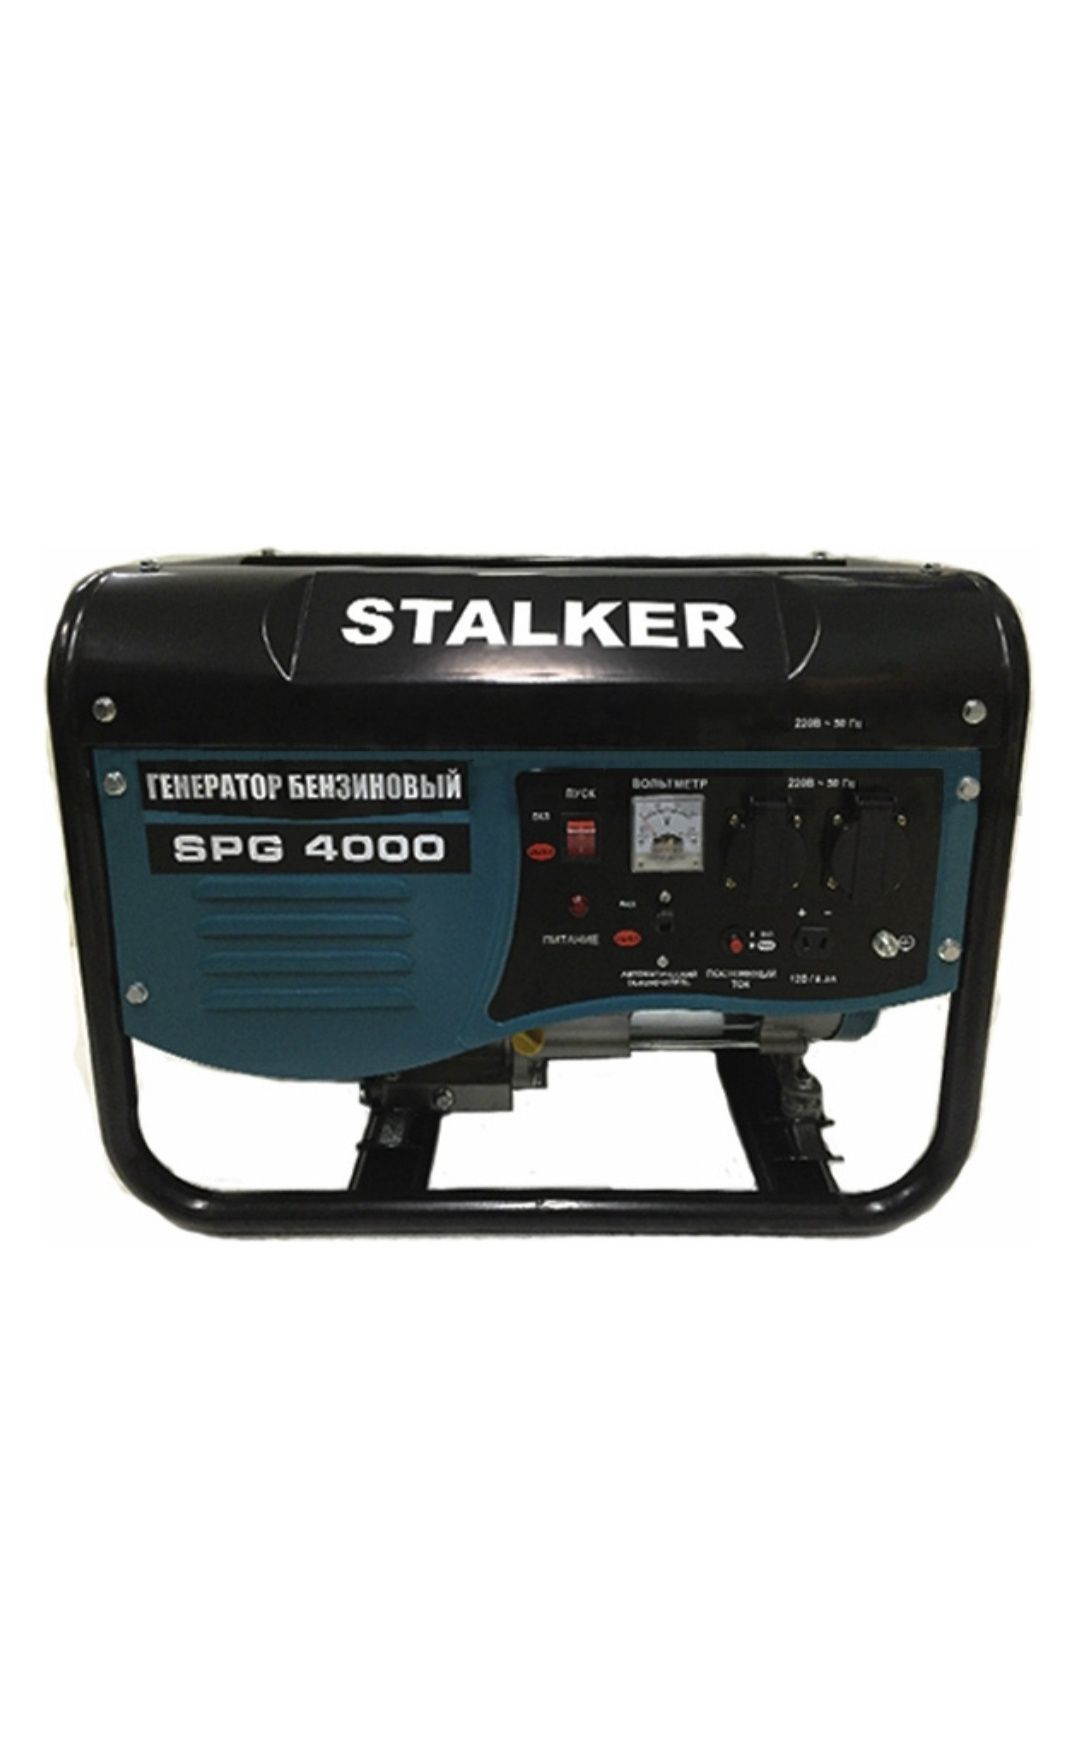 Stalker SPG 4000